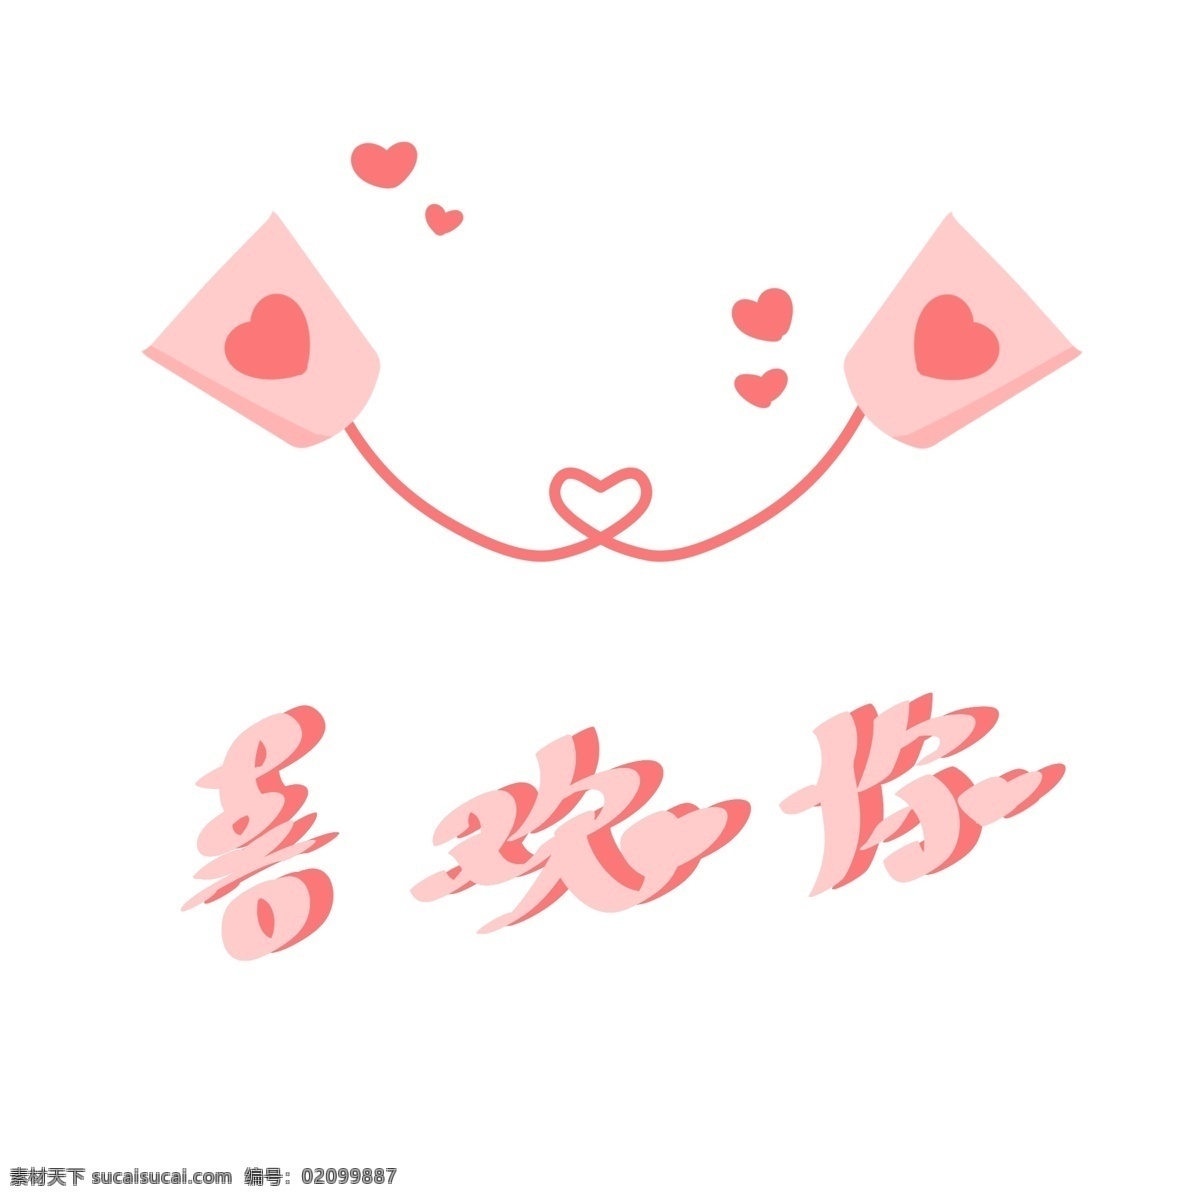 喜欢 爱心 桃 心土 电话 艺术 字 喜欢你 心形 中文 艺术字 免抠 手绘 可爱